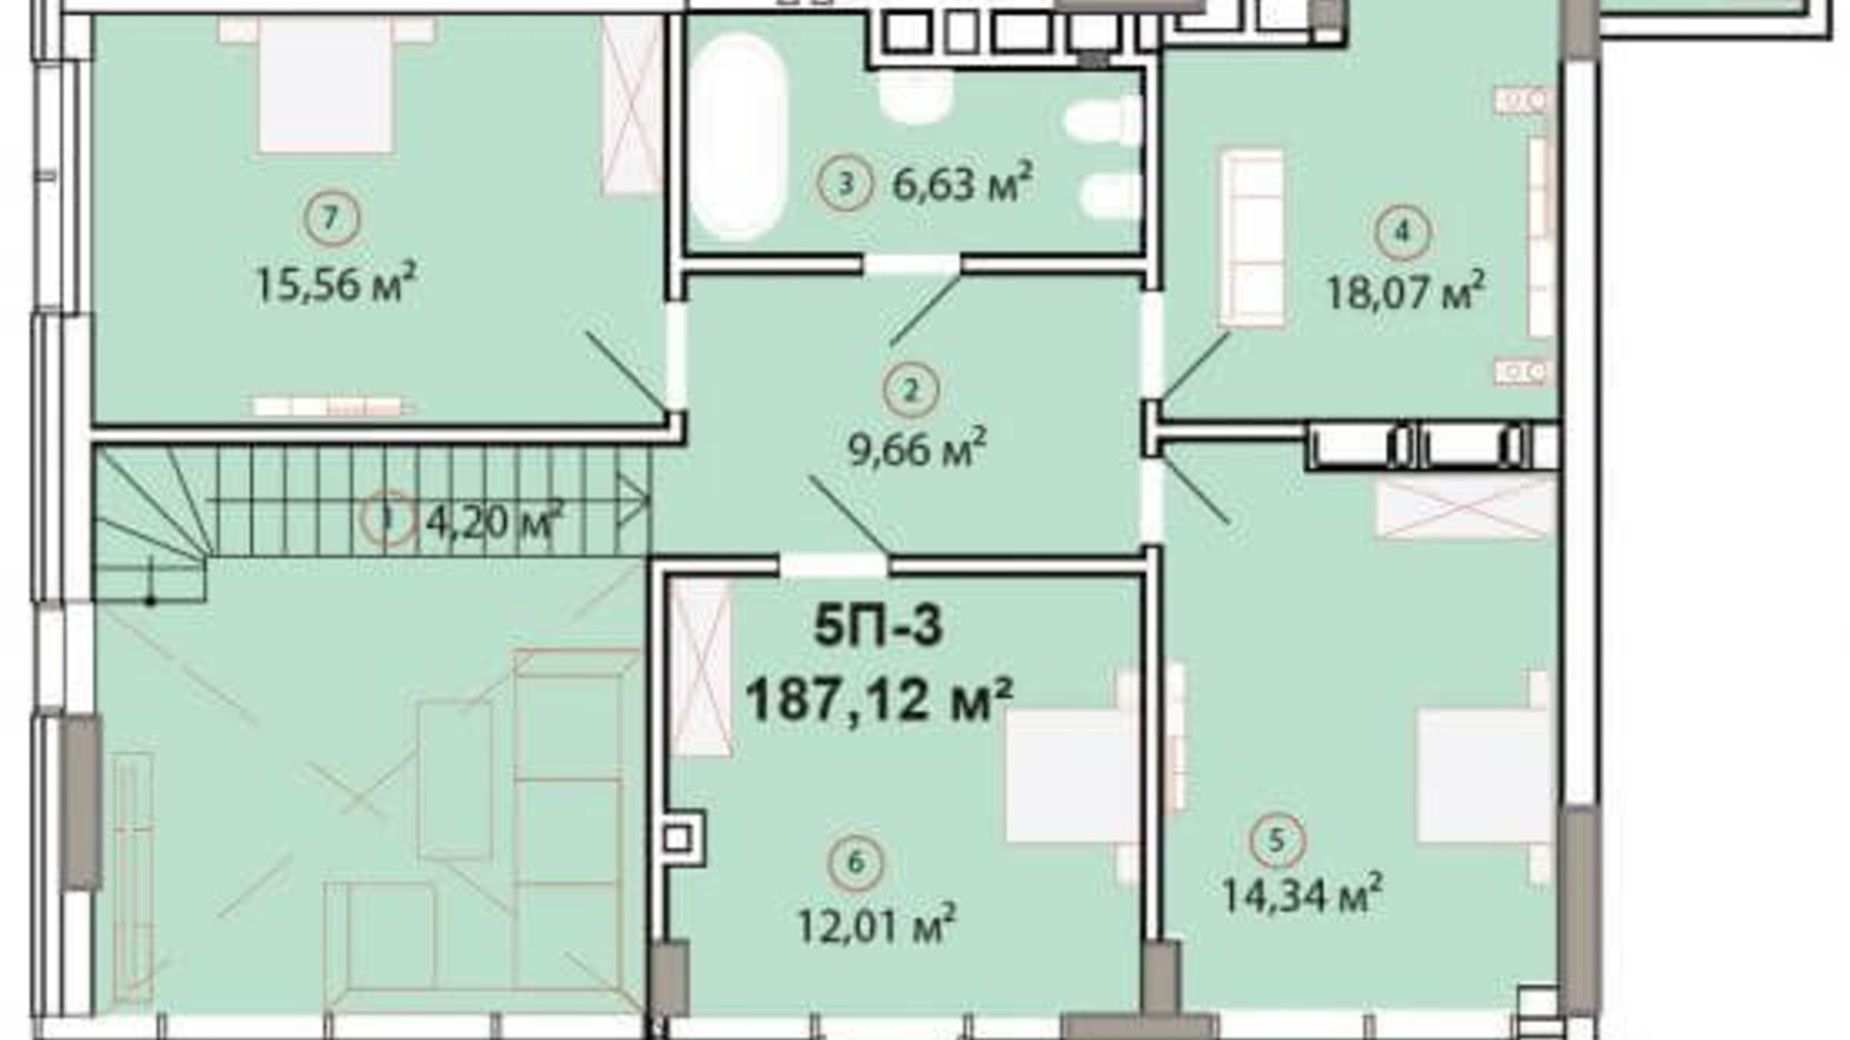 Планировка много­уровневой квартиры в ЖК Edelweiss House 187.12 м², фото 225164